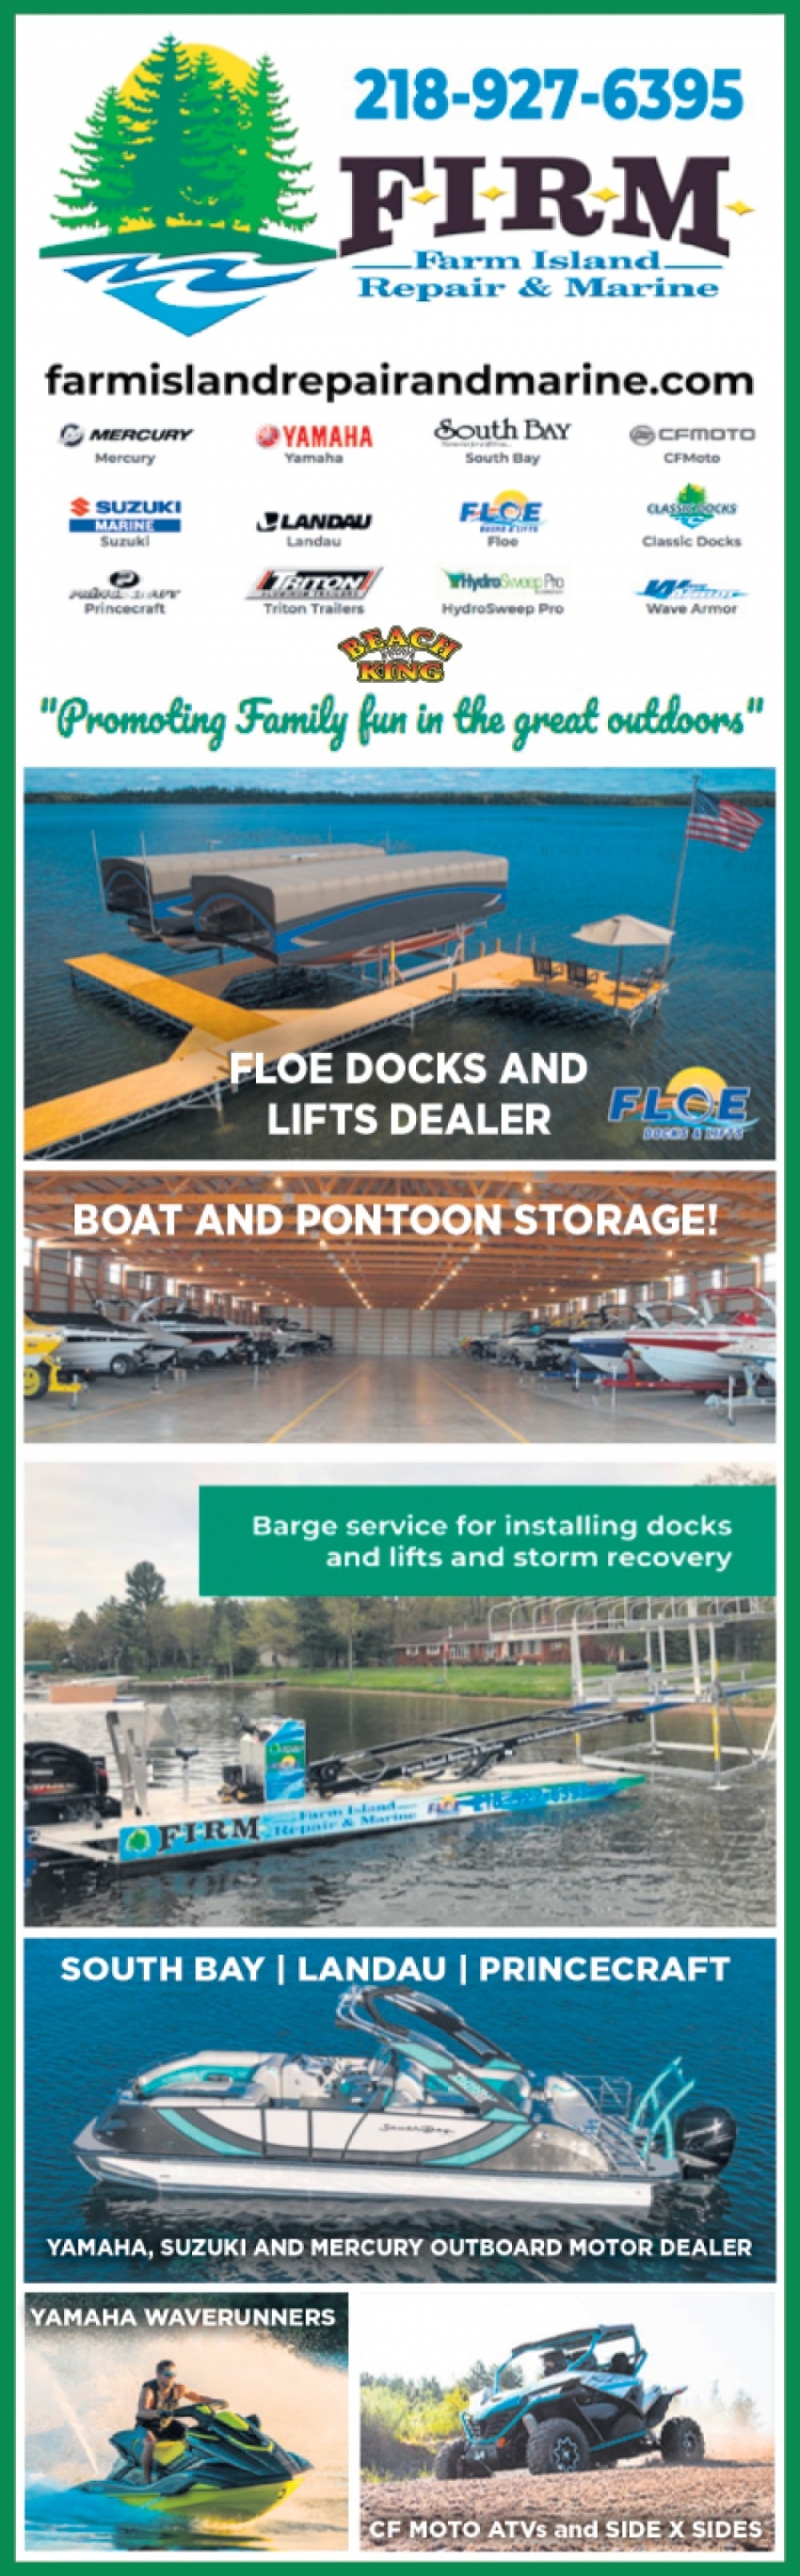 Floe Docks And Lifts Dealer